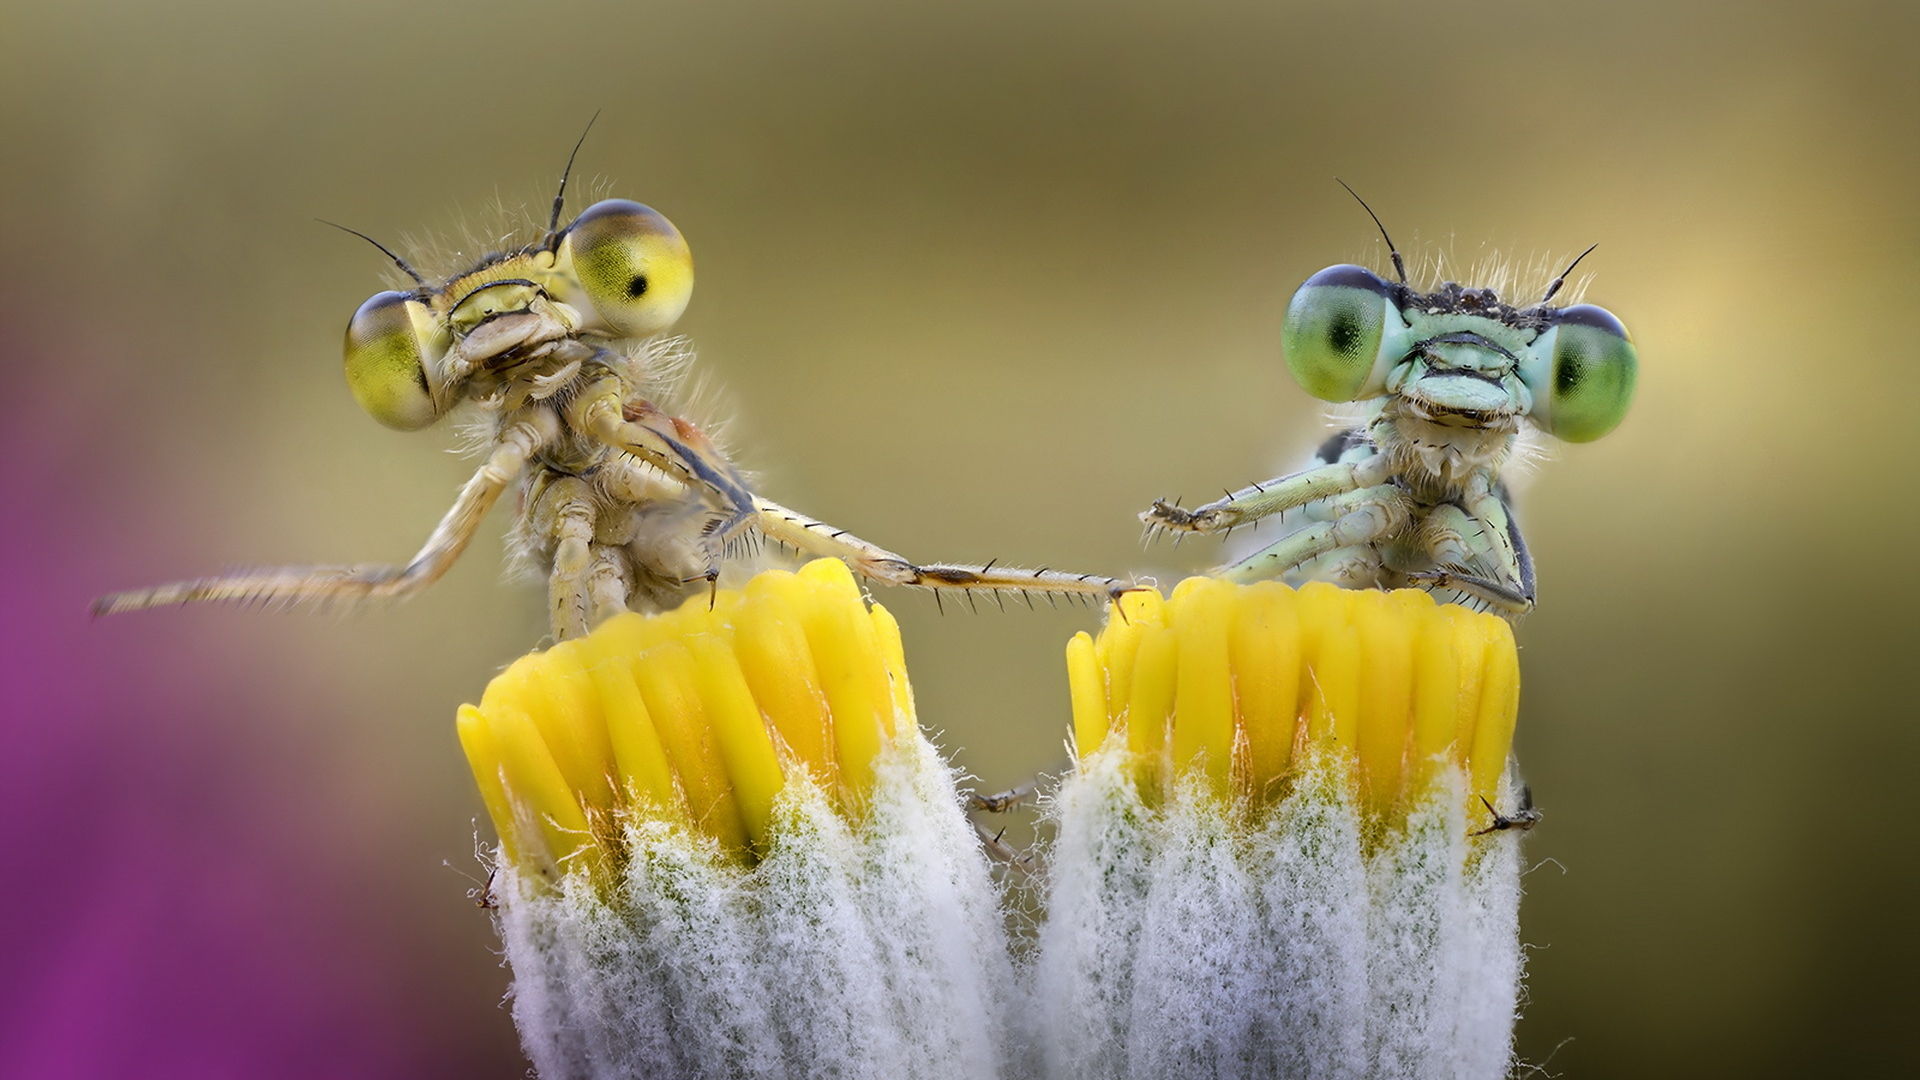 دانلود تصویر حیرت انگیز از دو حشره بر روی گرده های گل